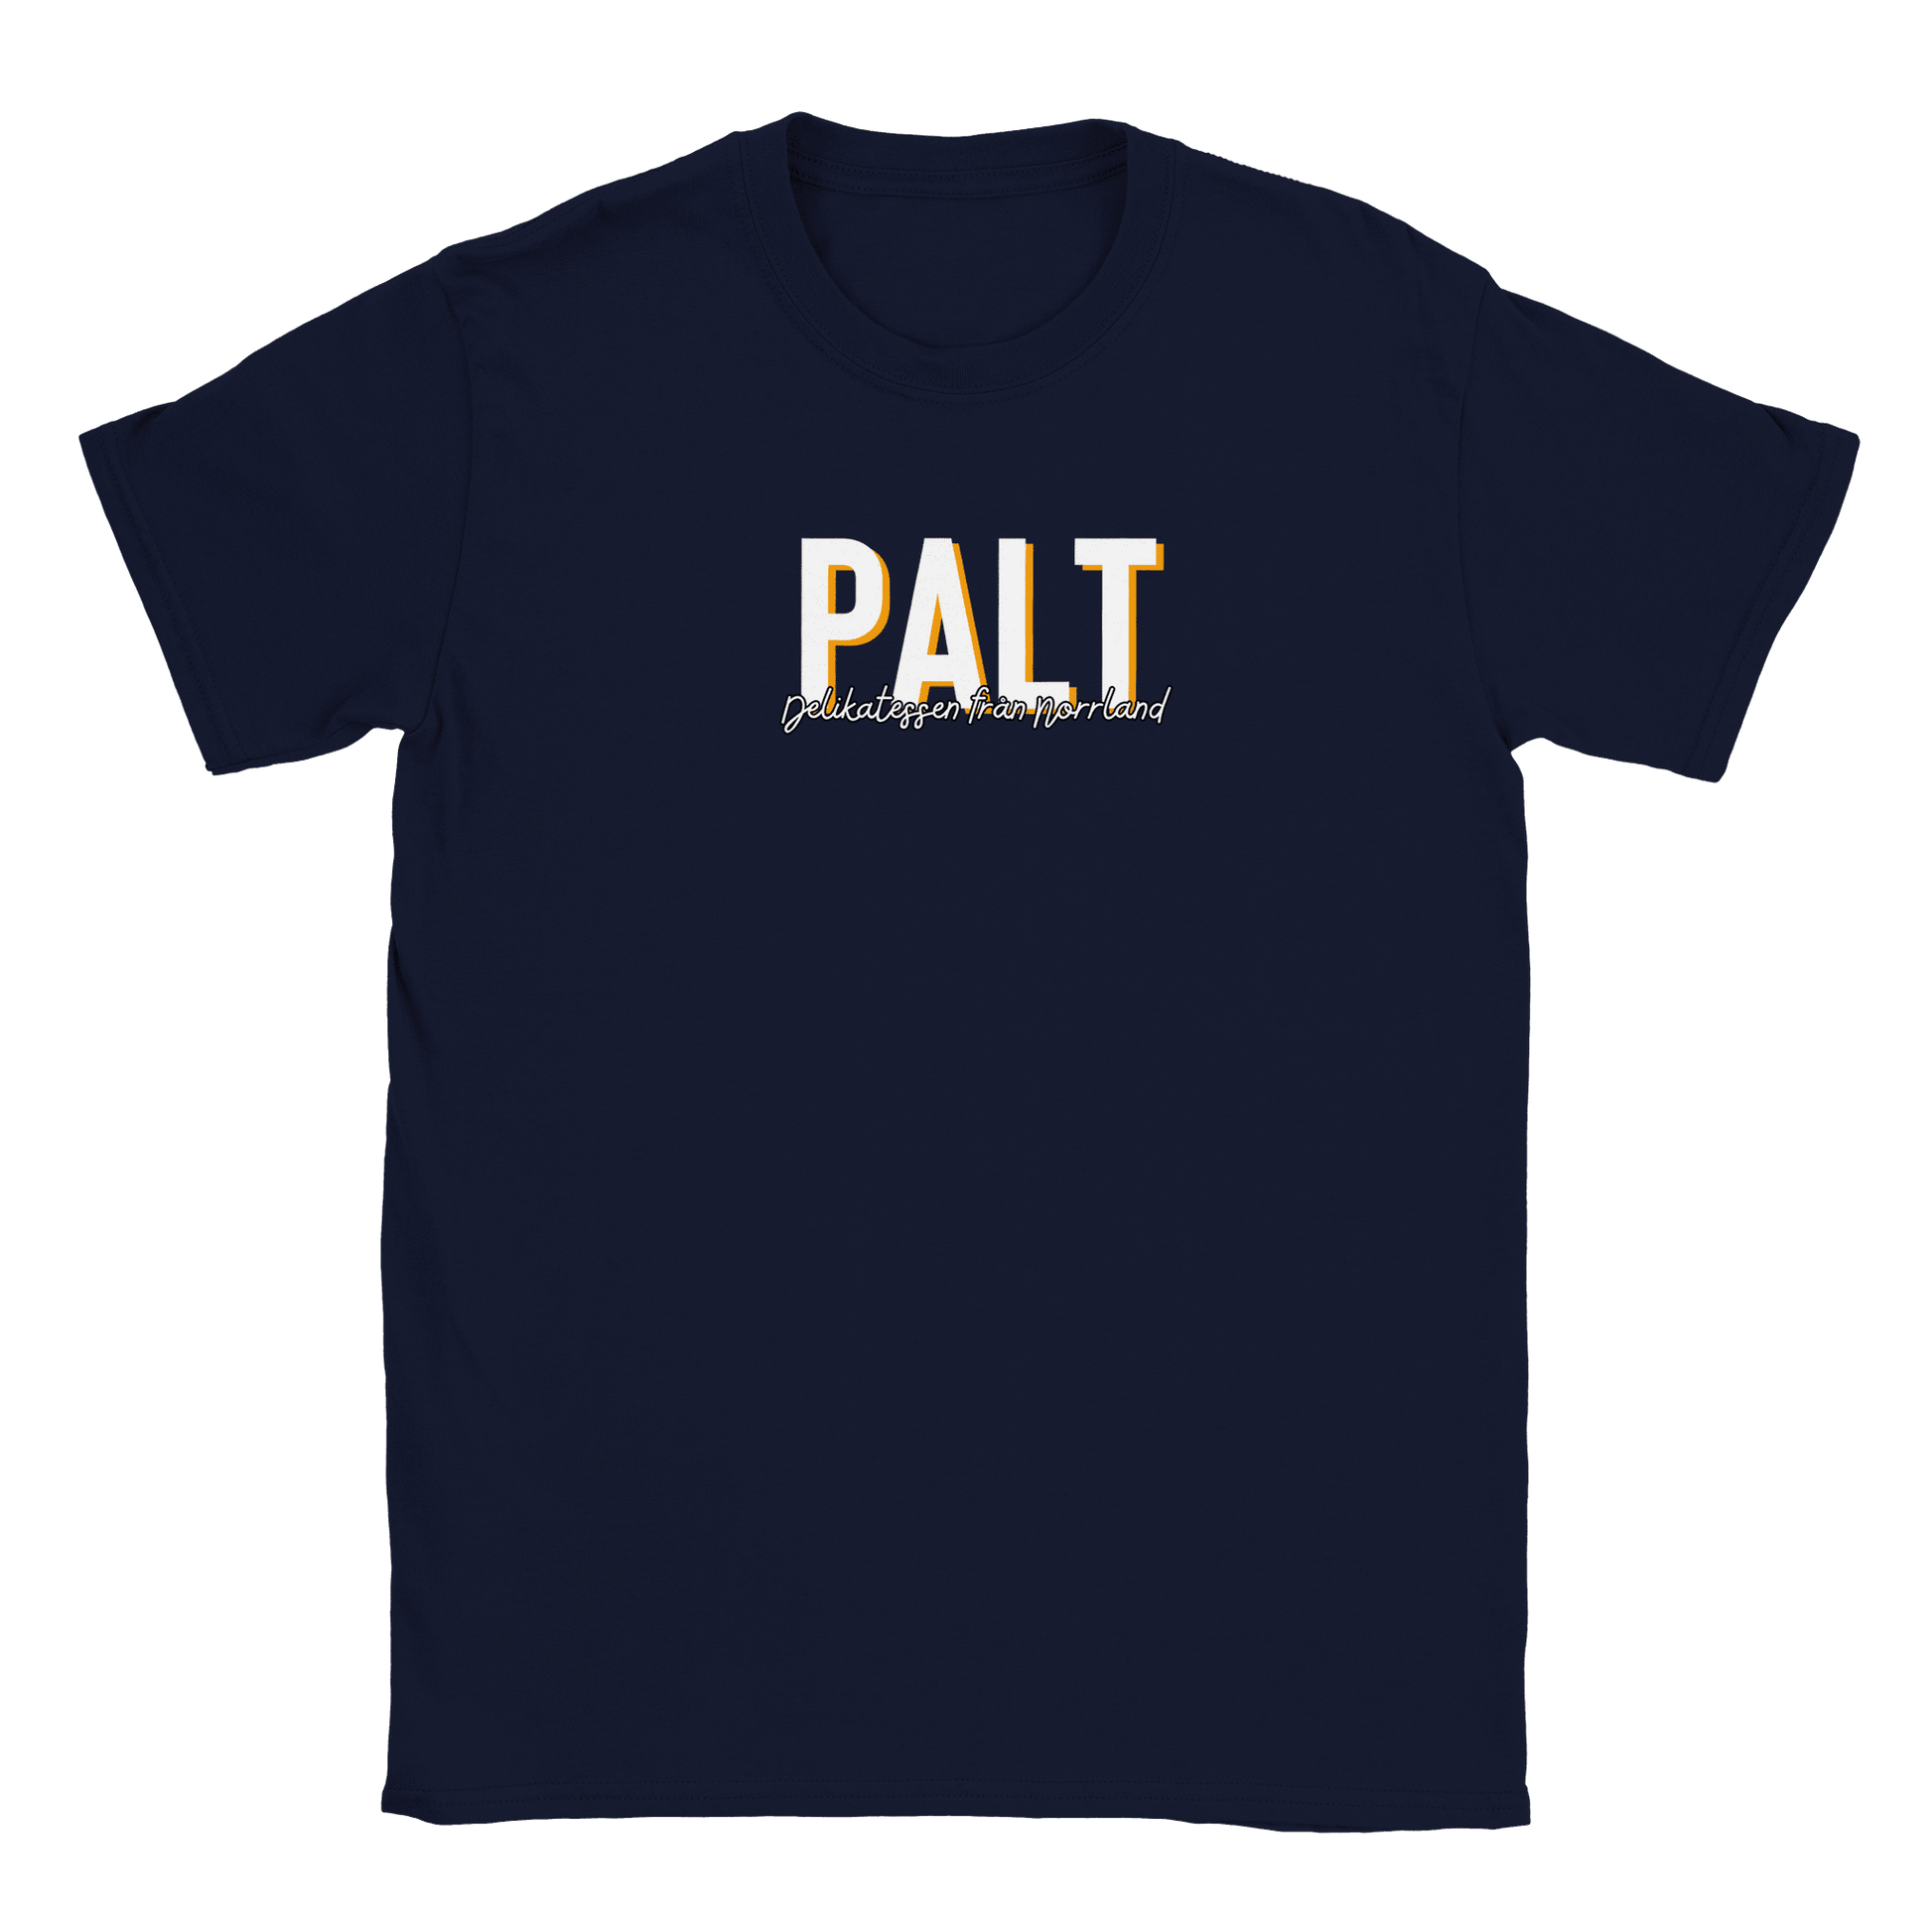 Palt - T-shirt Marinblå